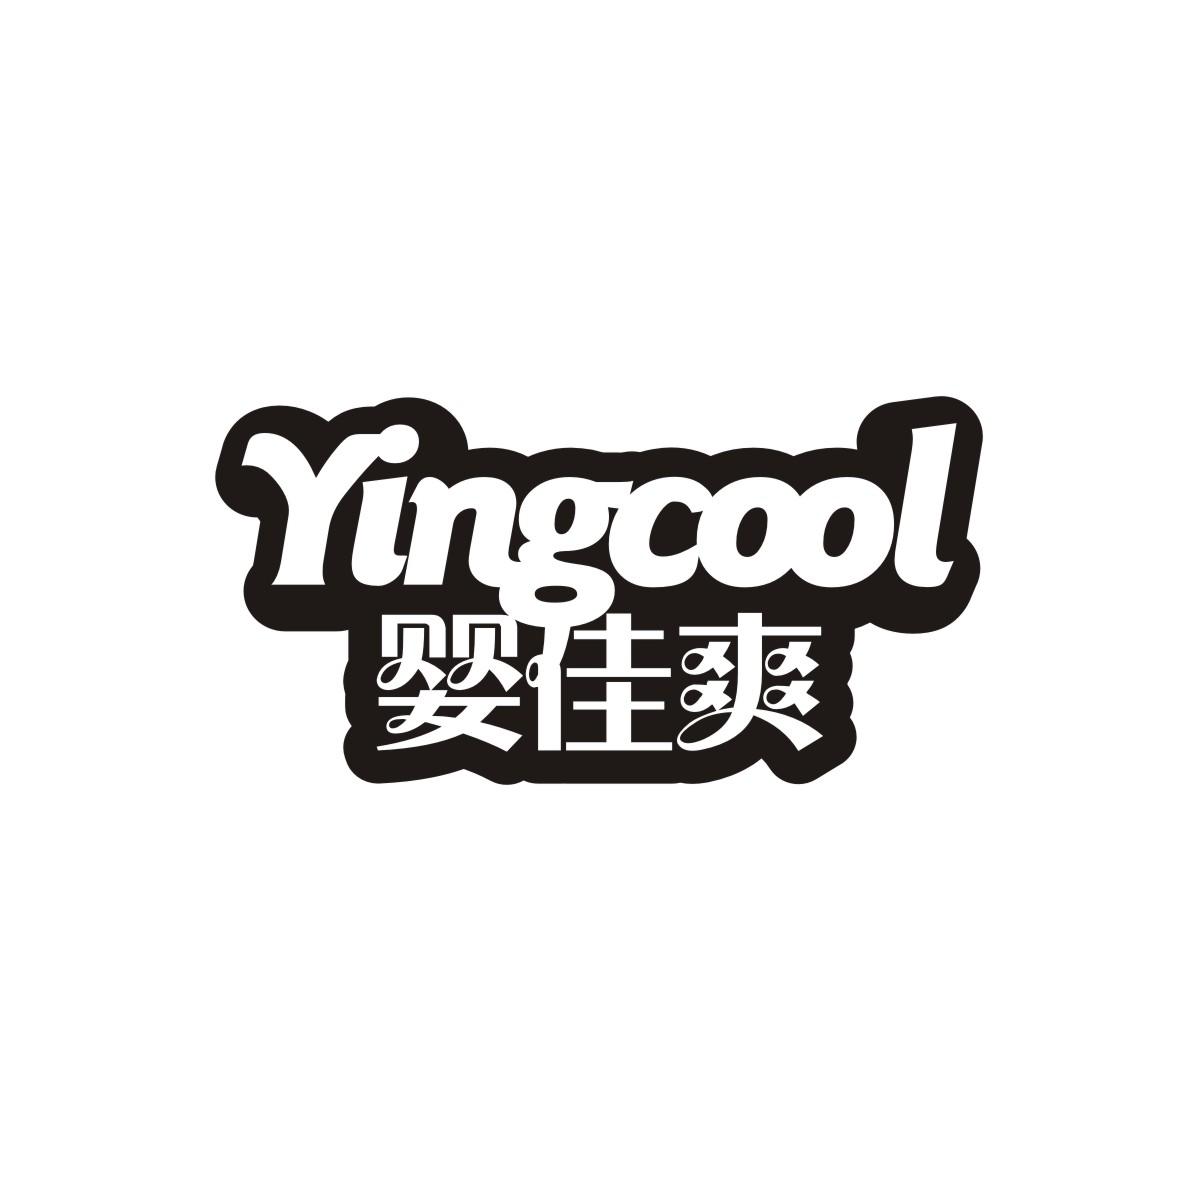 婴佳爽YINGCOOL商标图片